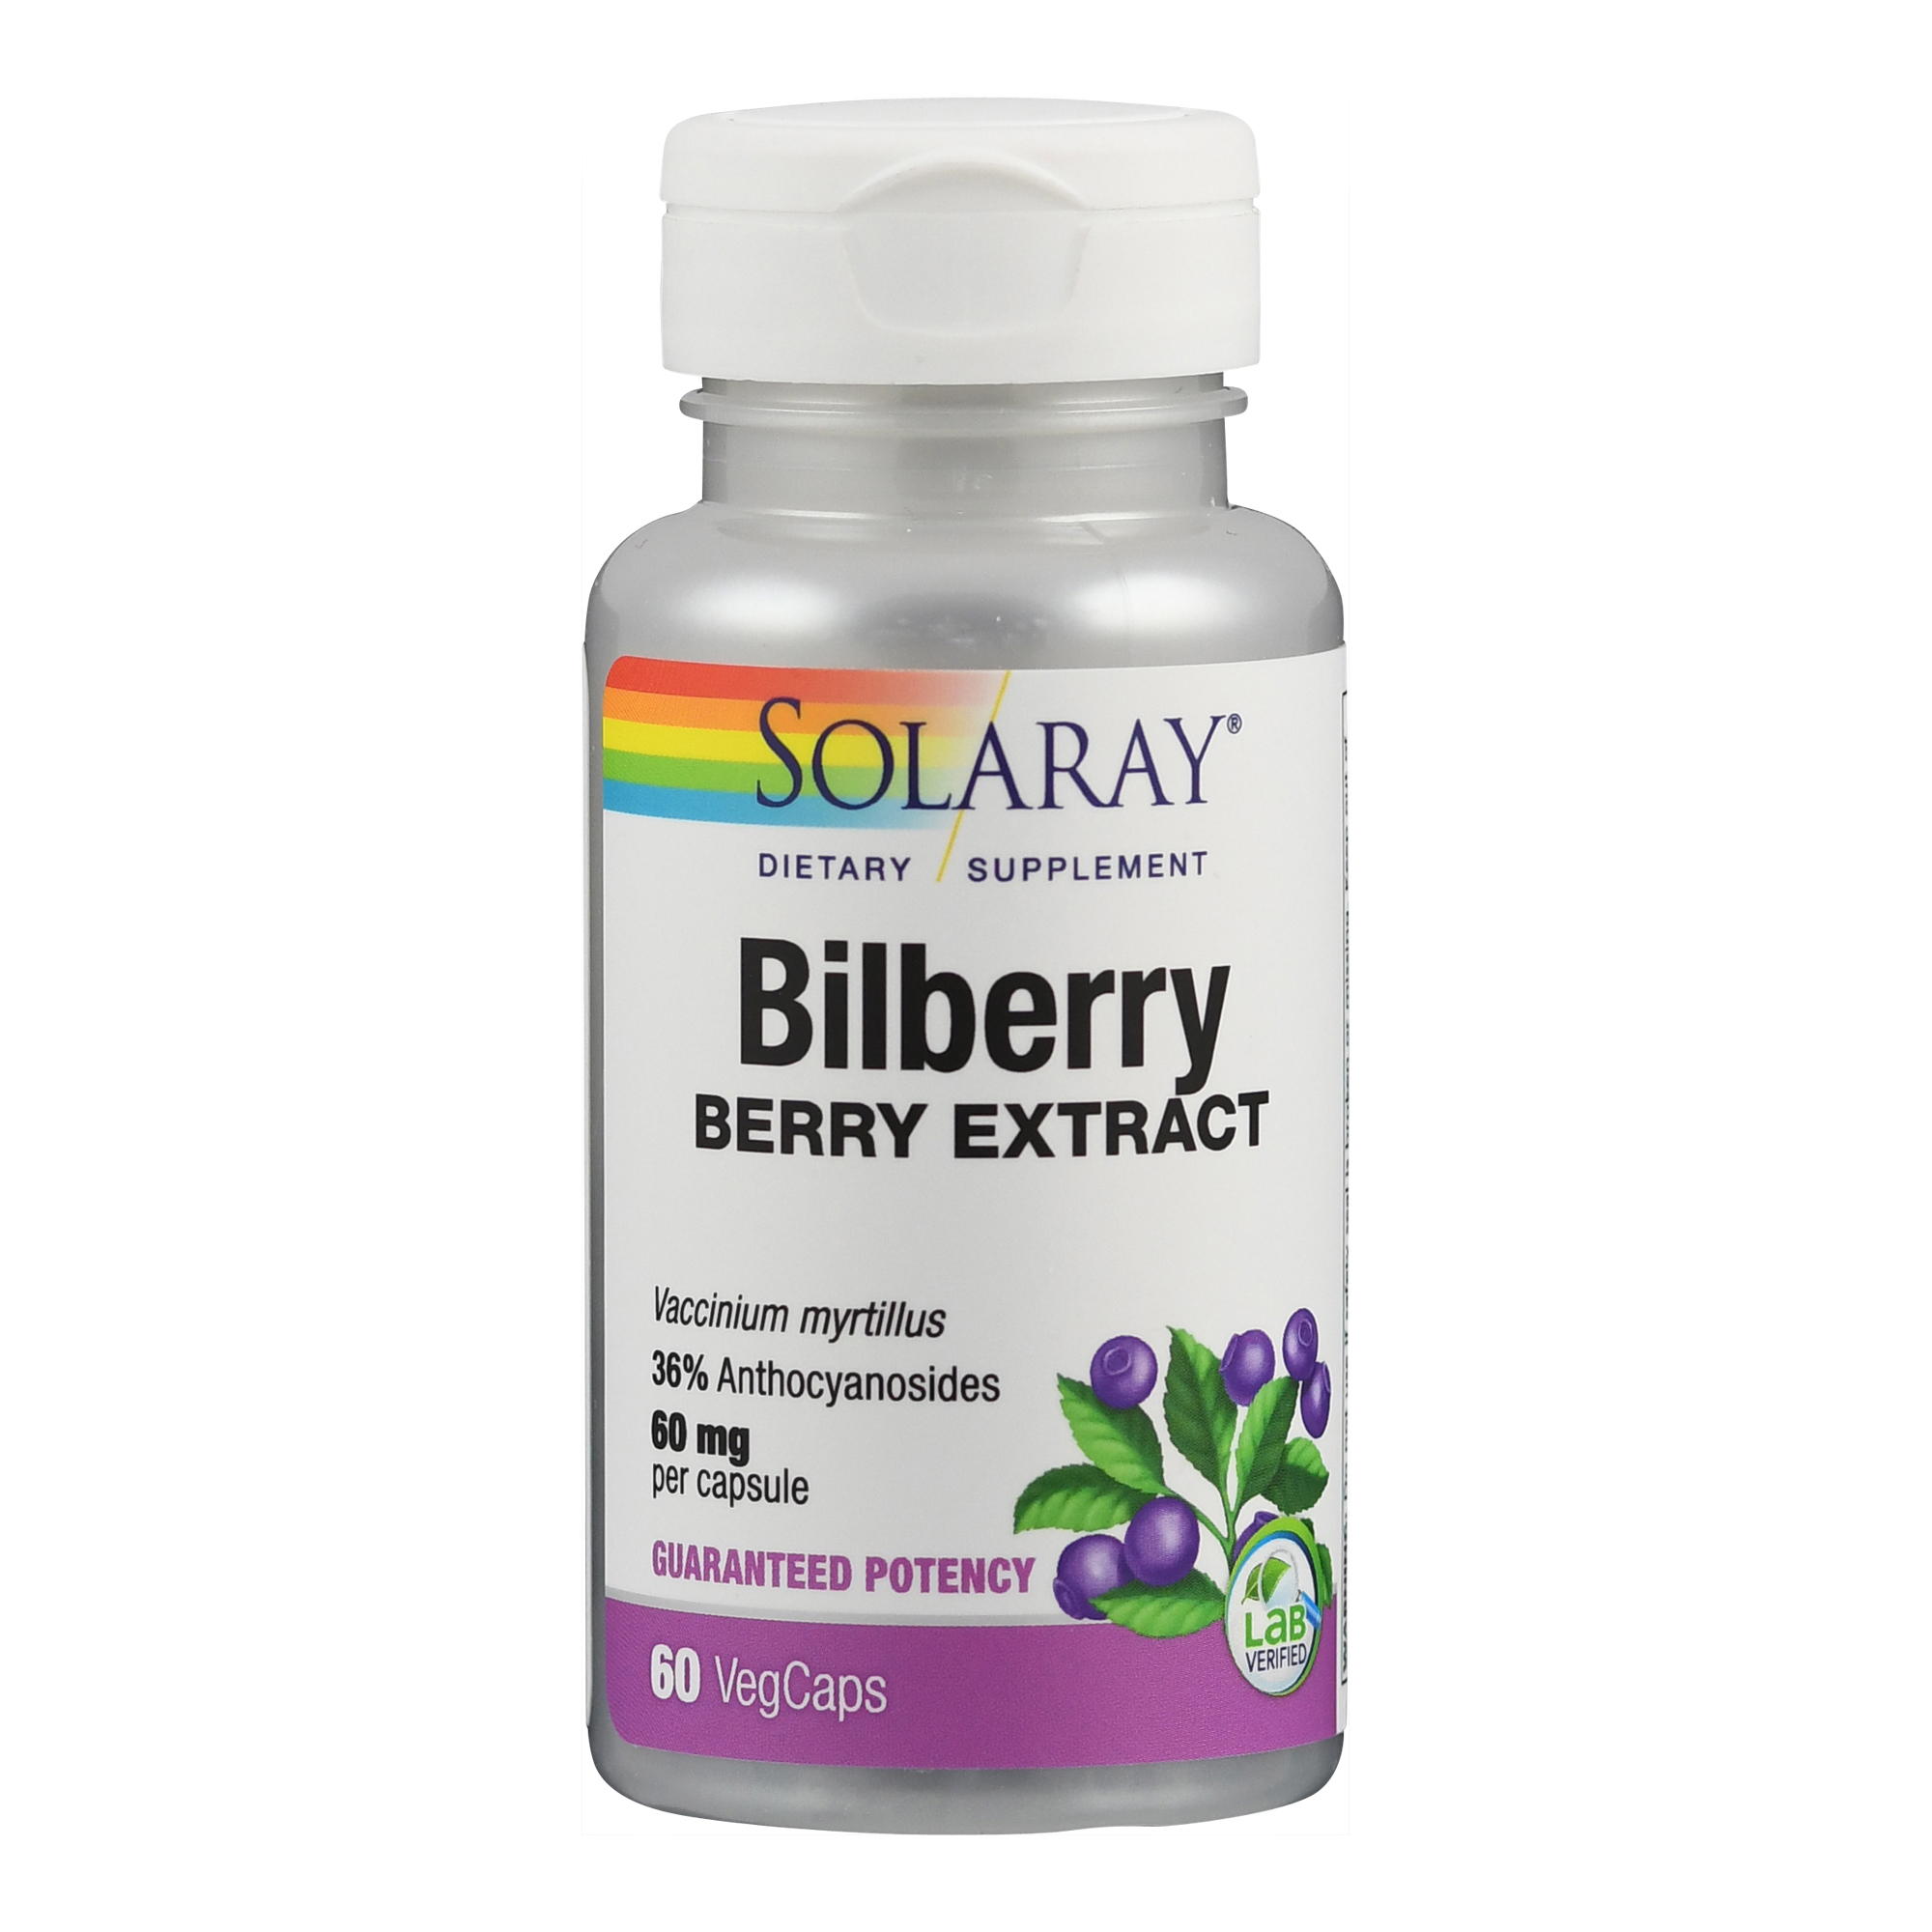 Blaubeere (Heidelbeere) Extrakt 60 mg (Bilberry) I laborgeprüft von Solaray.